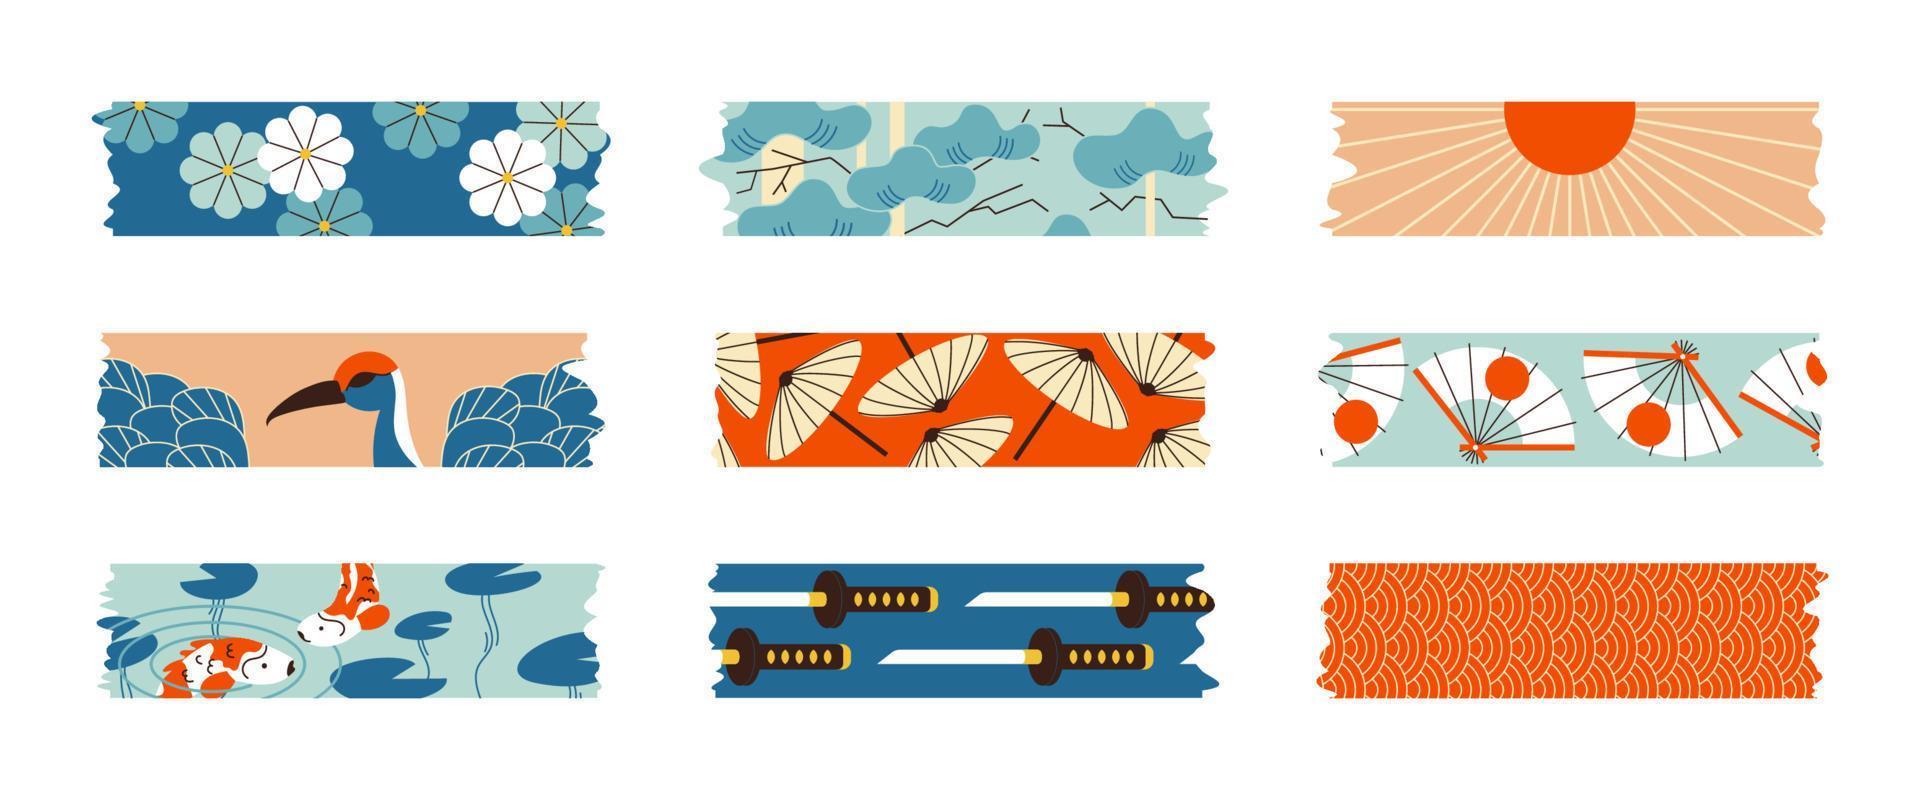 washi tape set elementi di design giapponese. raccolta di strisce di nastro adesivo con un motivo di pesce koi, loto, ombrello, katana e ventaglio. pezzi di carta adesiva per cornici, scrapbooking, adesivi. vettore